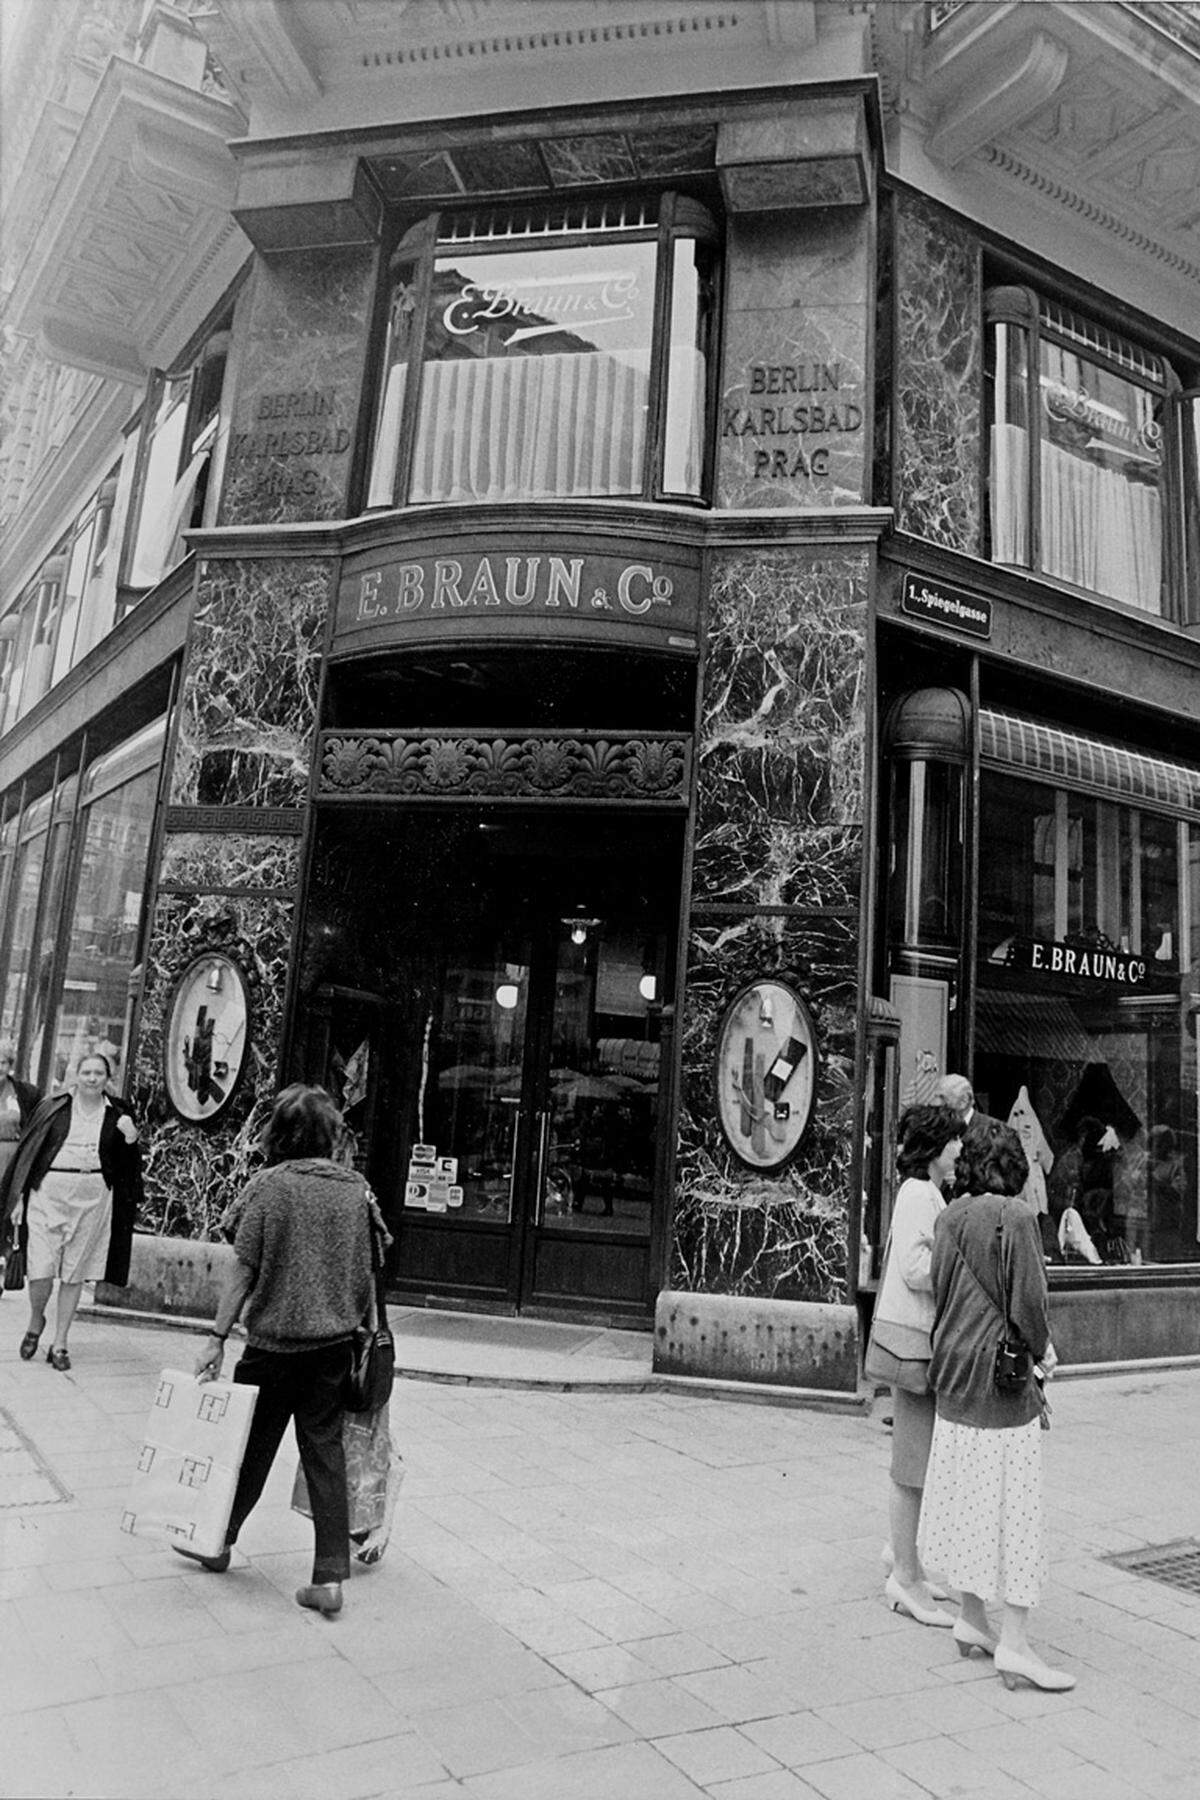 Das Modebusiness hat sich seit den späten Siebzigern von Grund auf geändert. Viele Maisons, die heute in aller Munde sind, gab es damals noch gar nicht, und wenn doch, waren sie nicht Teil weltumspannender Konzerne. Eine entsprechend wichtige Rolle spielten lokale Händler, die Kollektionen für ihre Boutiquen und Warenhäuser importierten – die Ära der markeneigenen Flagship-Stores sollte erst später kommen. In Wien kaufte man vielleicht bei Braun & Co. am Graben ein, oder beim Kaufhaus Steffl auf der Kärntner Straße, ließ sich einen Anzug bei Knize machen oder schaute auf der Suche nach extravaganten Objekten in der Section N der Noevers vorbei. Erstaunlich übrigens, wie spät die großen Modemarken mit eigenen Stores nach Wien kamen, dann aber auf einen Schlag: Versace 1997, Gucci und Louis Vuitton 1998, Prada ebenfalls erst Ende der 1990er, Chanel 2000, Hermès 2001, Giorgio Armani 2002 und Dolce & Gabbana 2002. Bleibt nur zu sagen: Besser spät als nie . . .